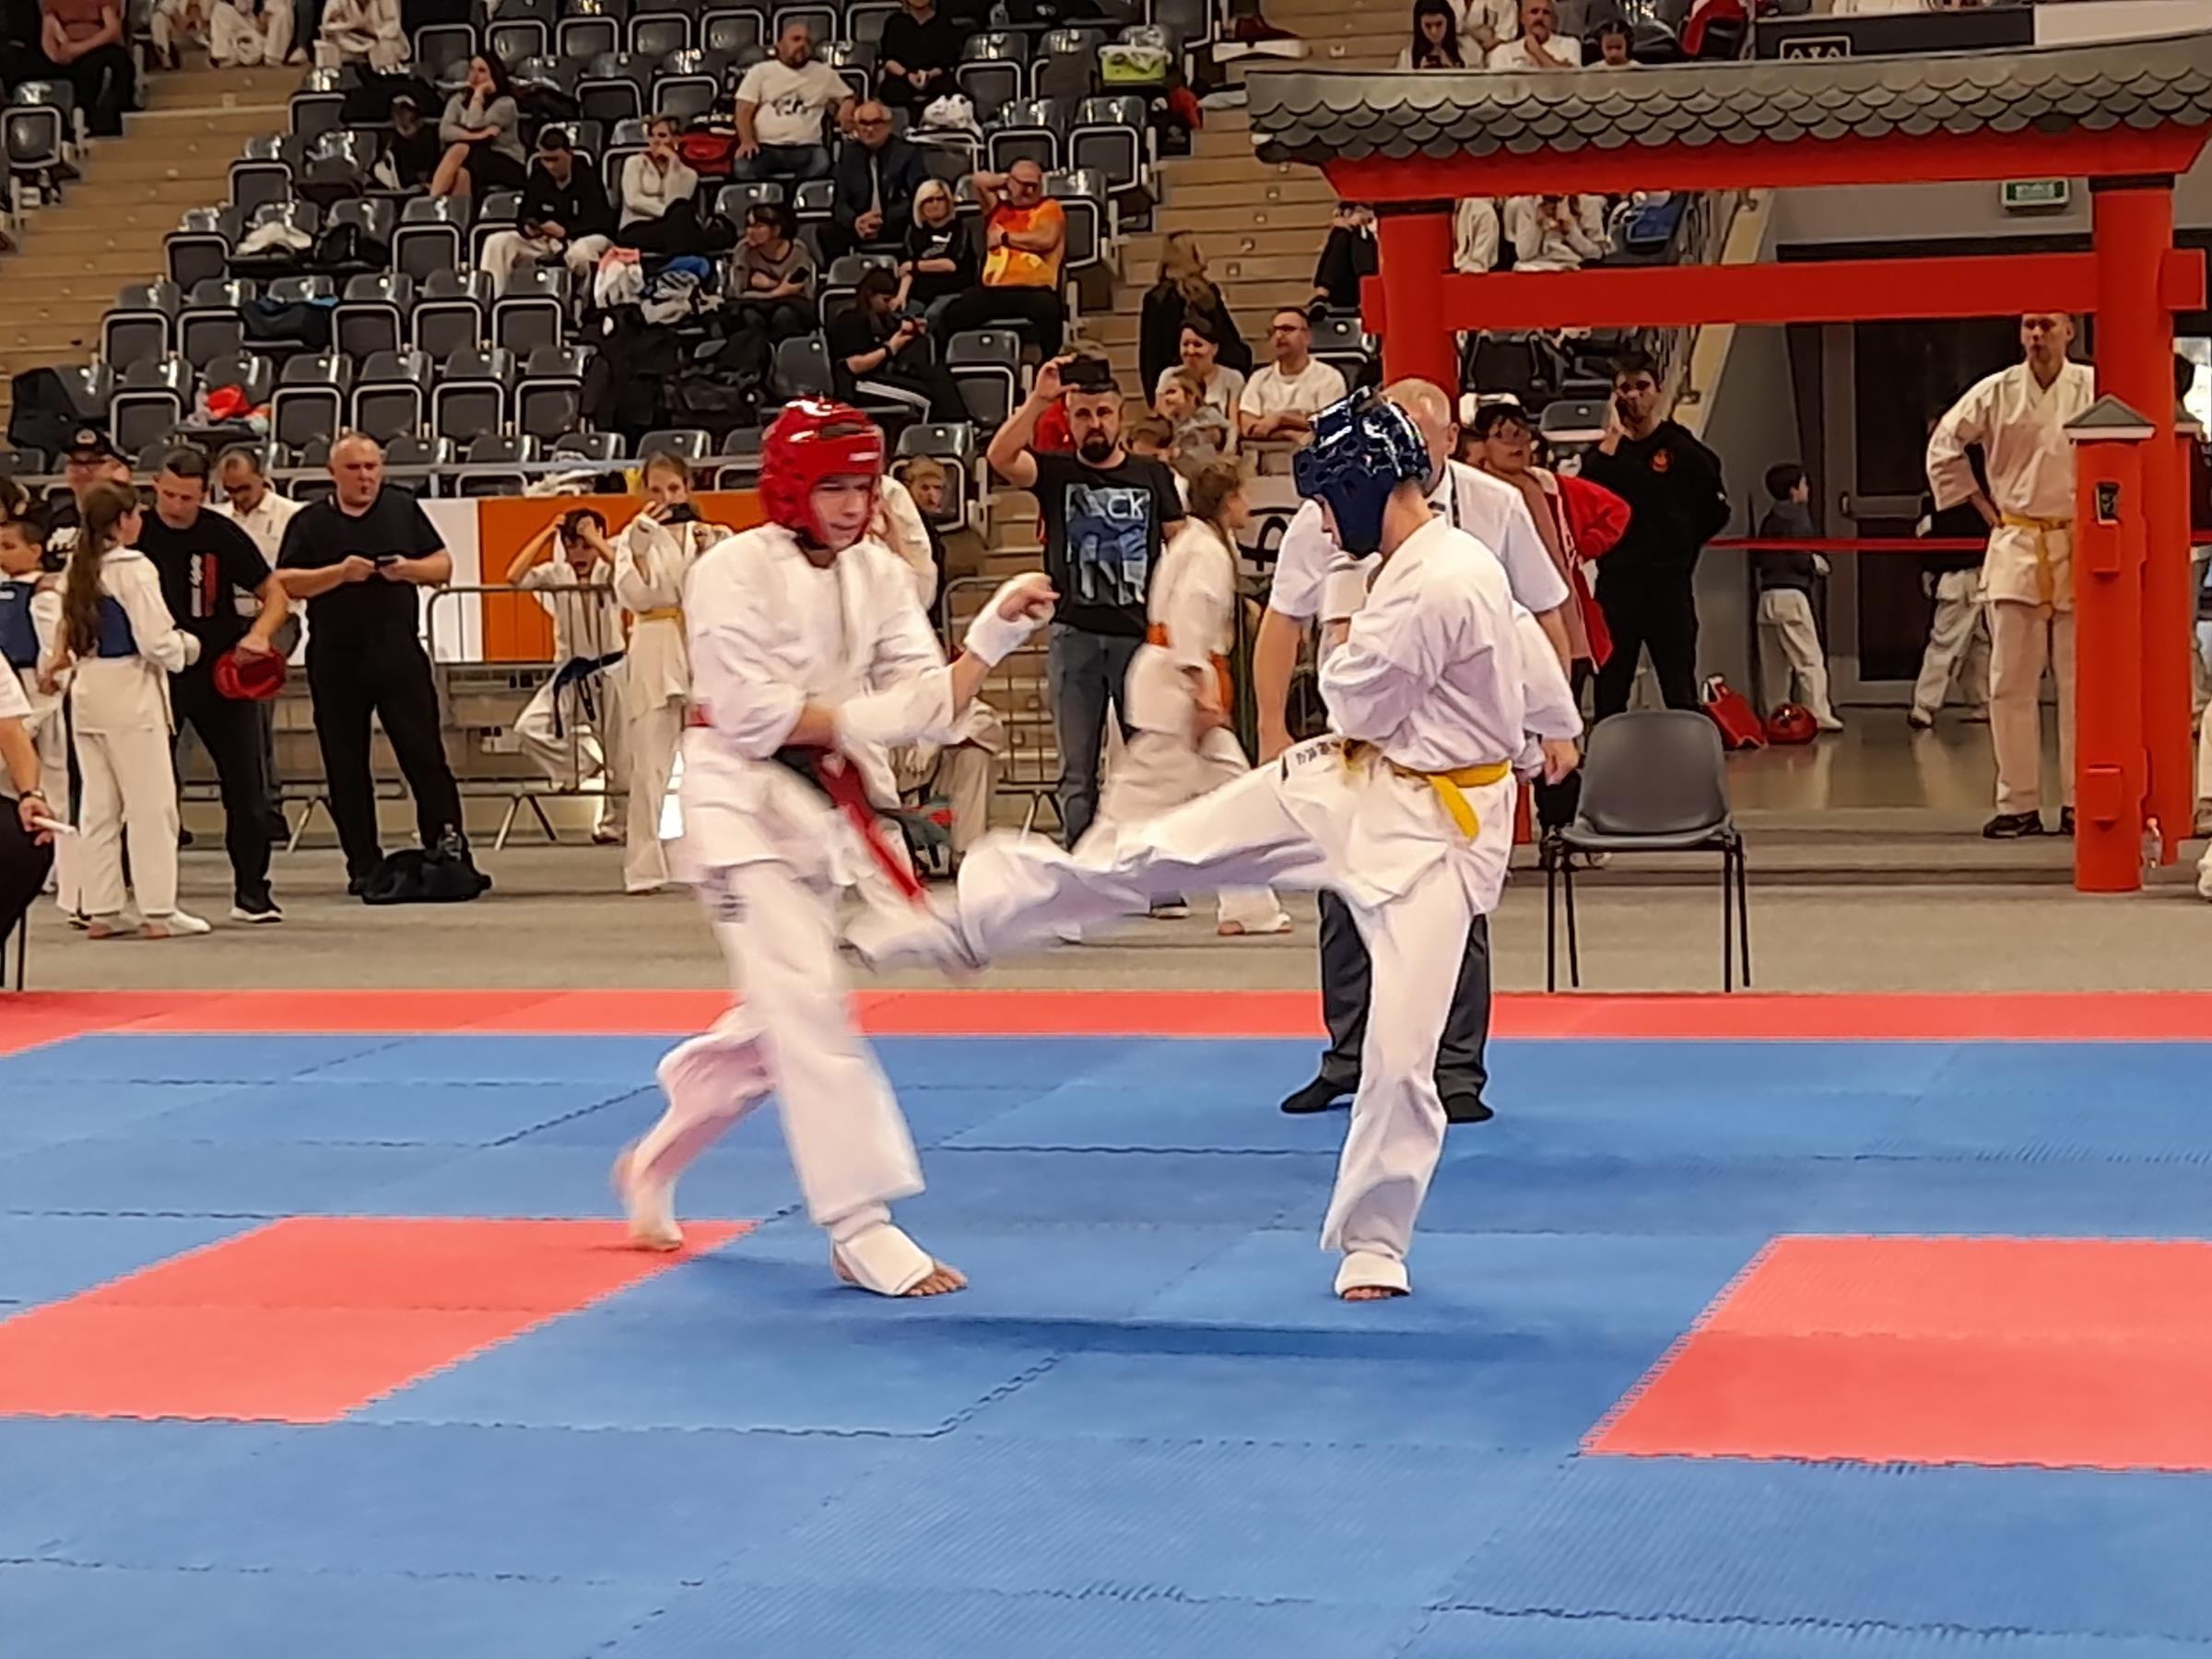 Zdj. nr. 2. XIII Międzynarodowy Turniej Karate Kyokushin CARBON CUP – 30.10.2021 r., Jastrzębie Zdrój